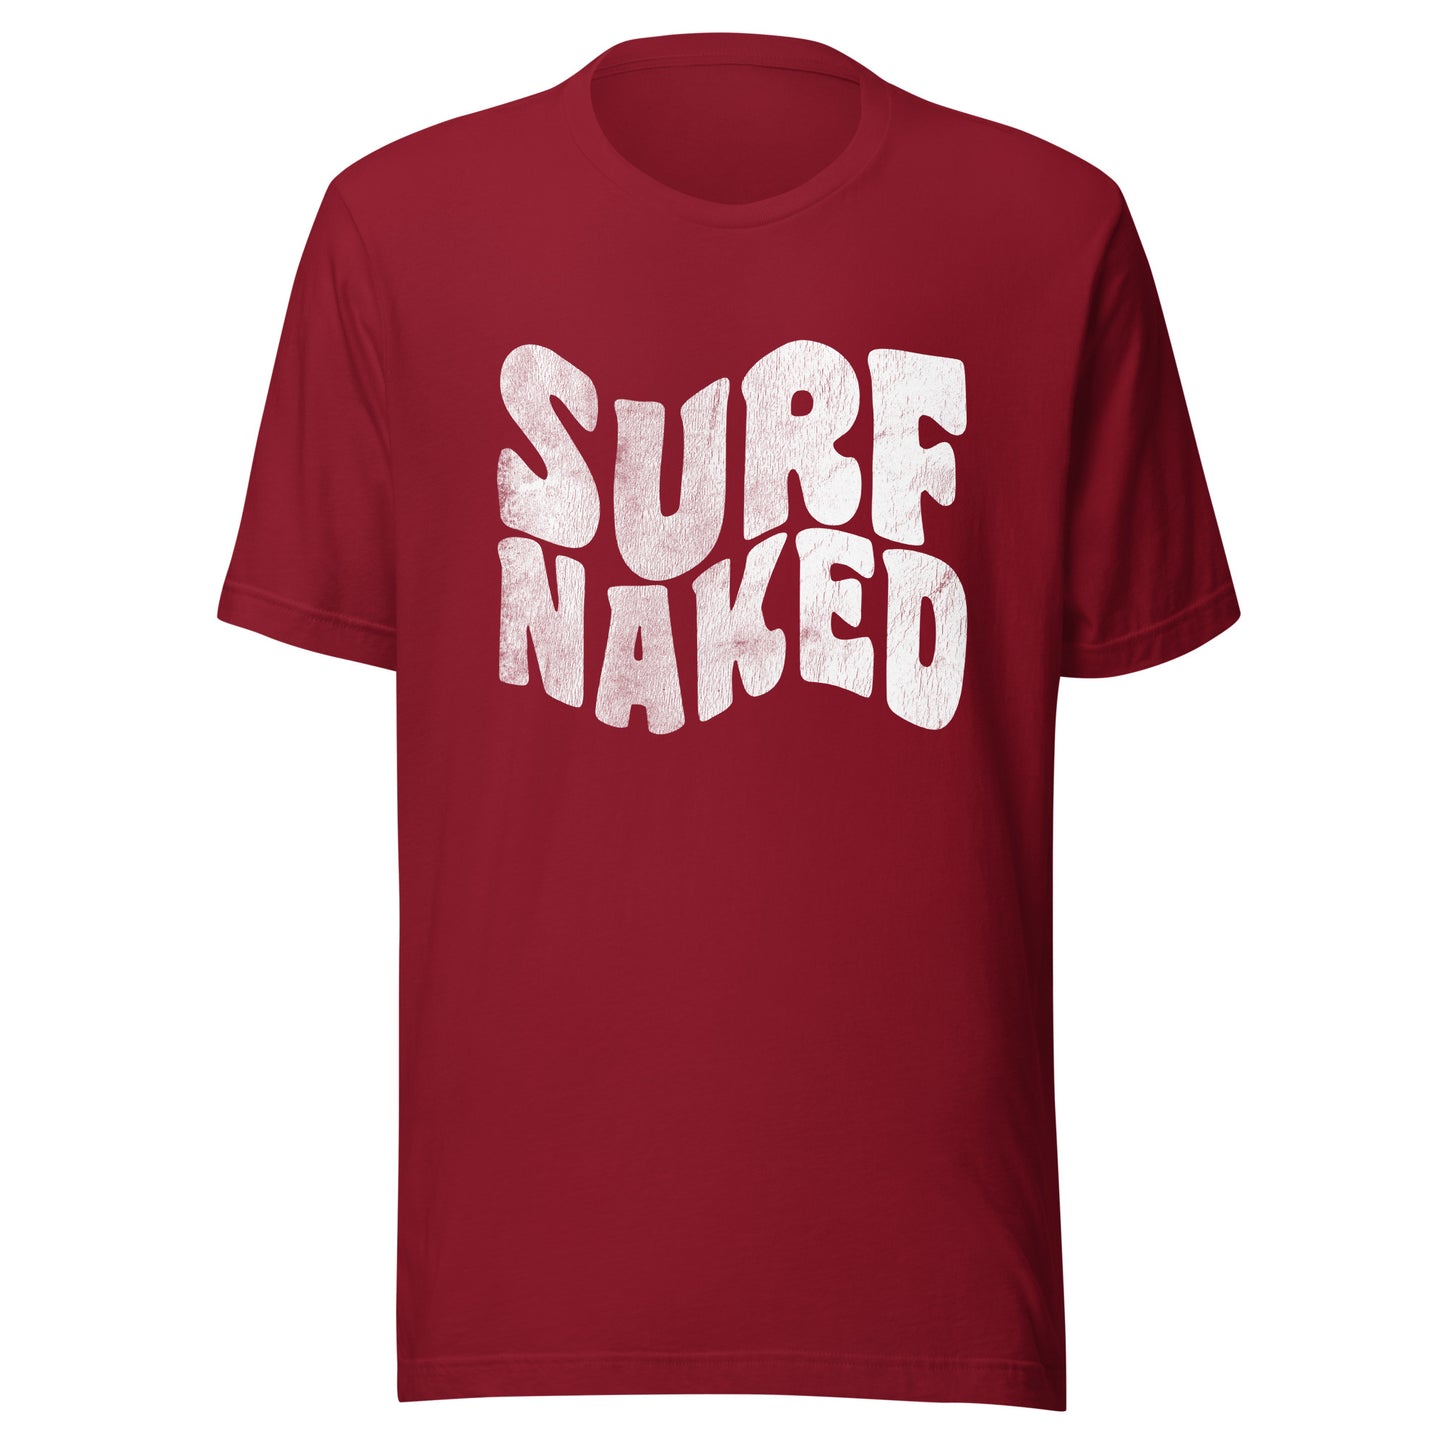 Retro Surf Naked